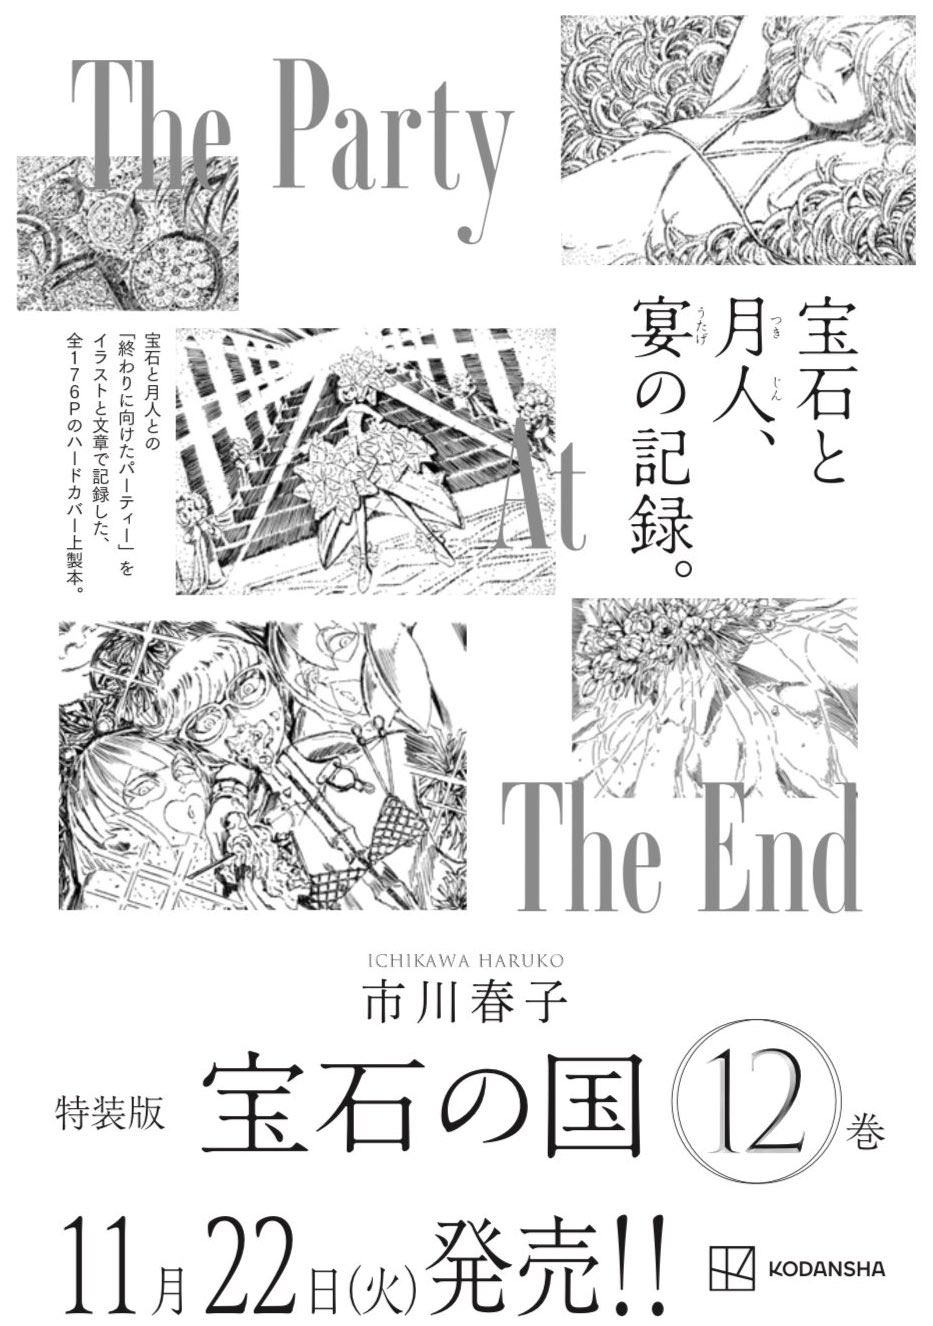 市川春子「宝石の国」最新刊 第12巻 11月22日発売! 原石フェアも実施